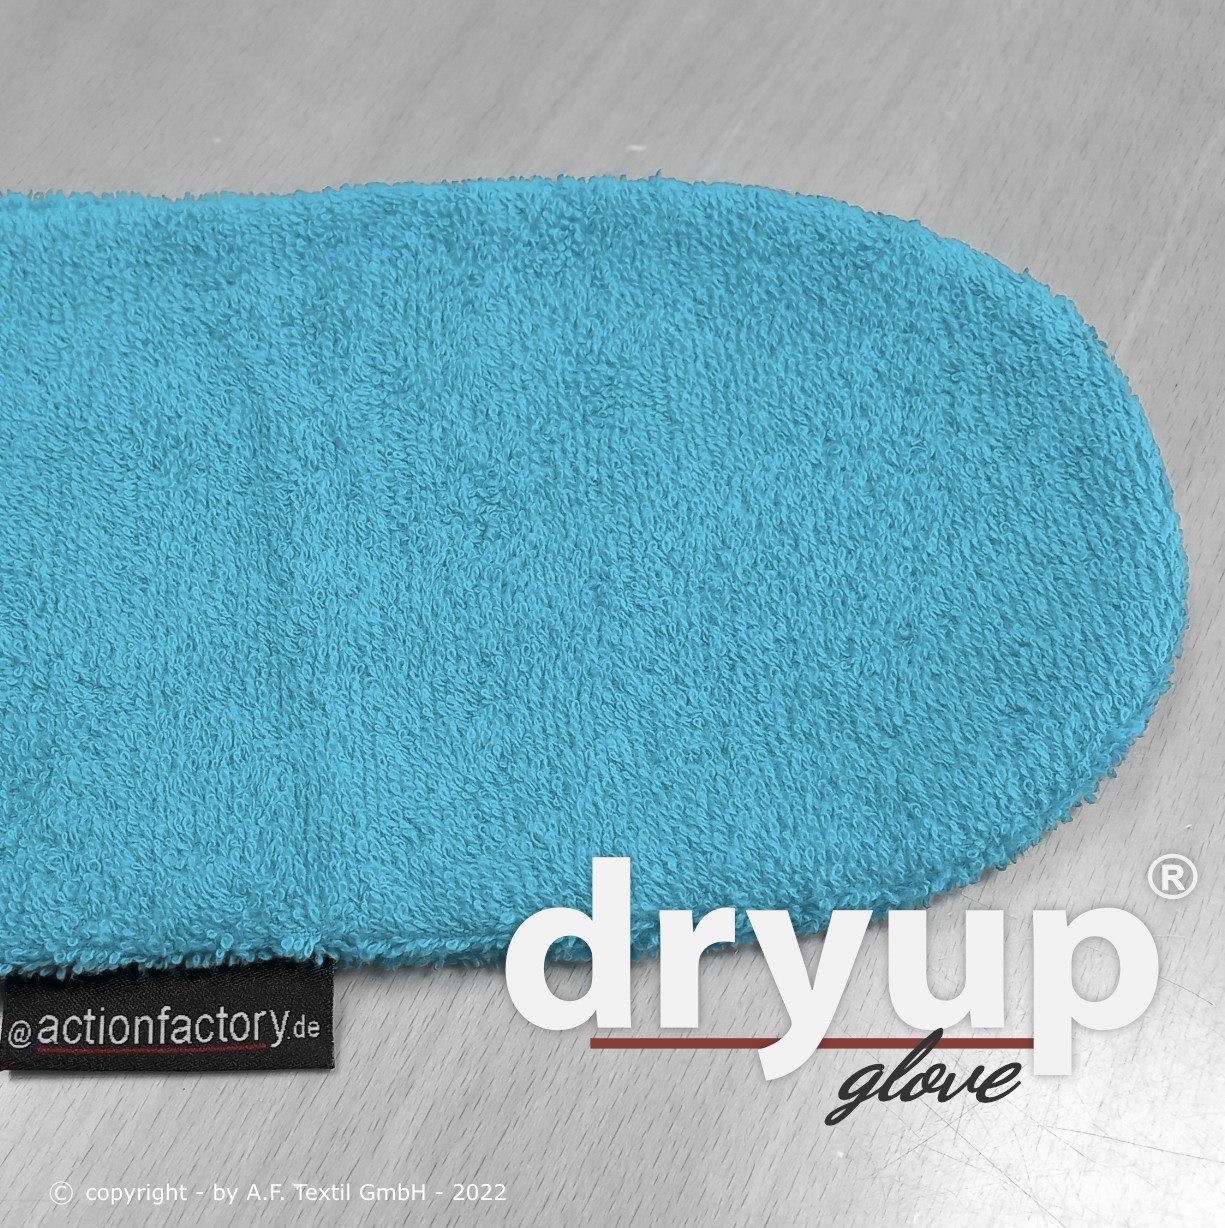 Dryup Glove - Cyan